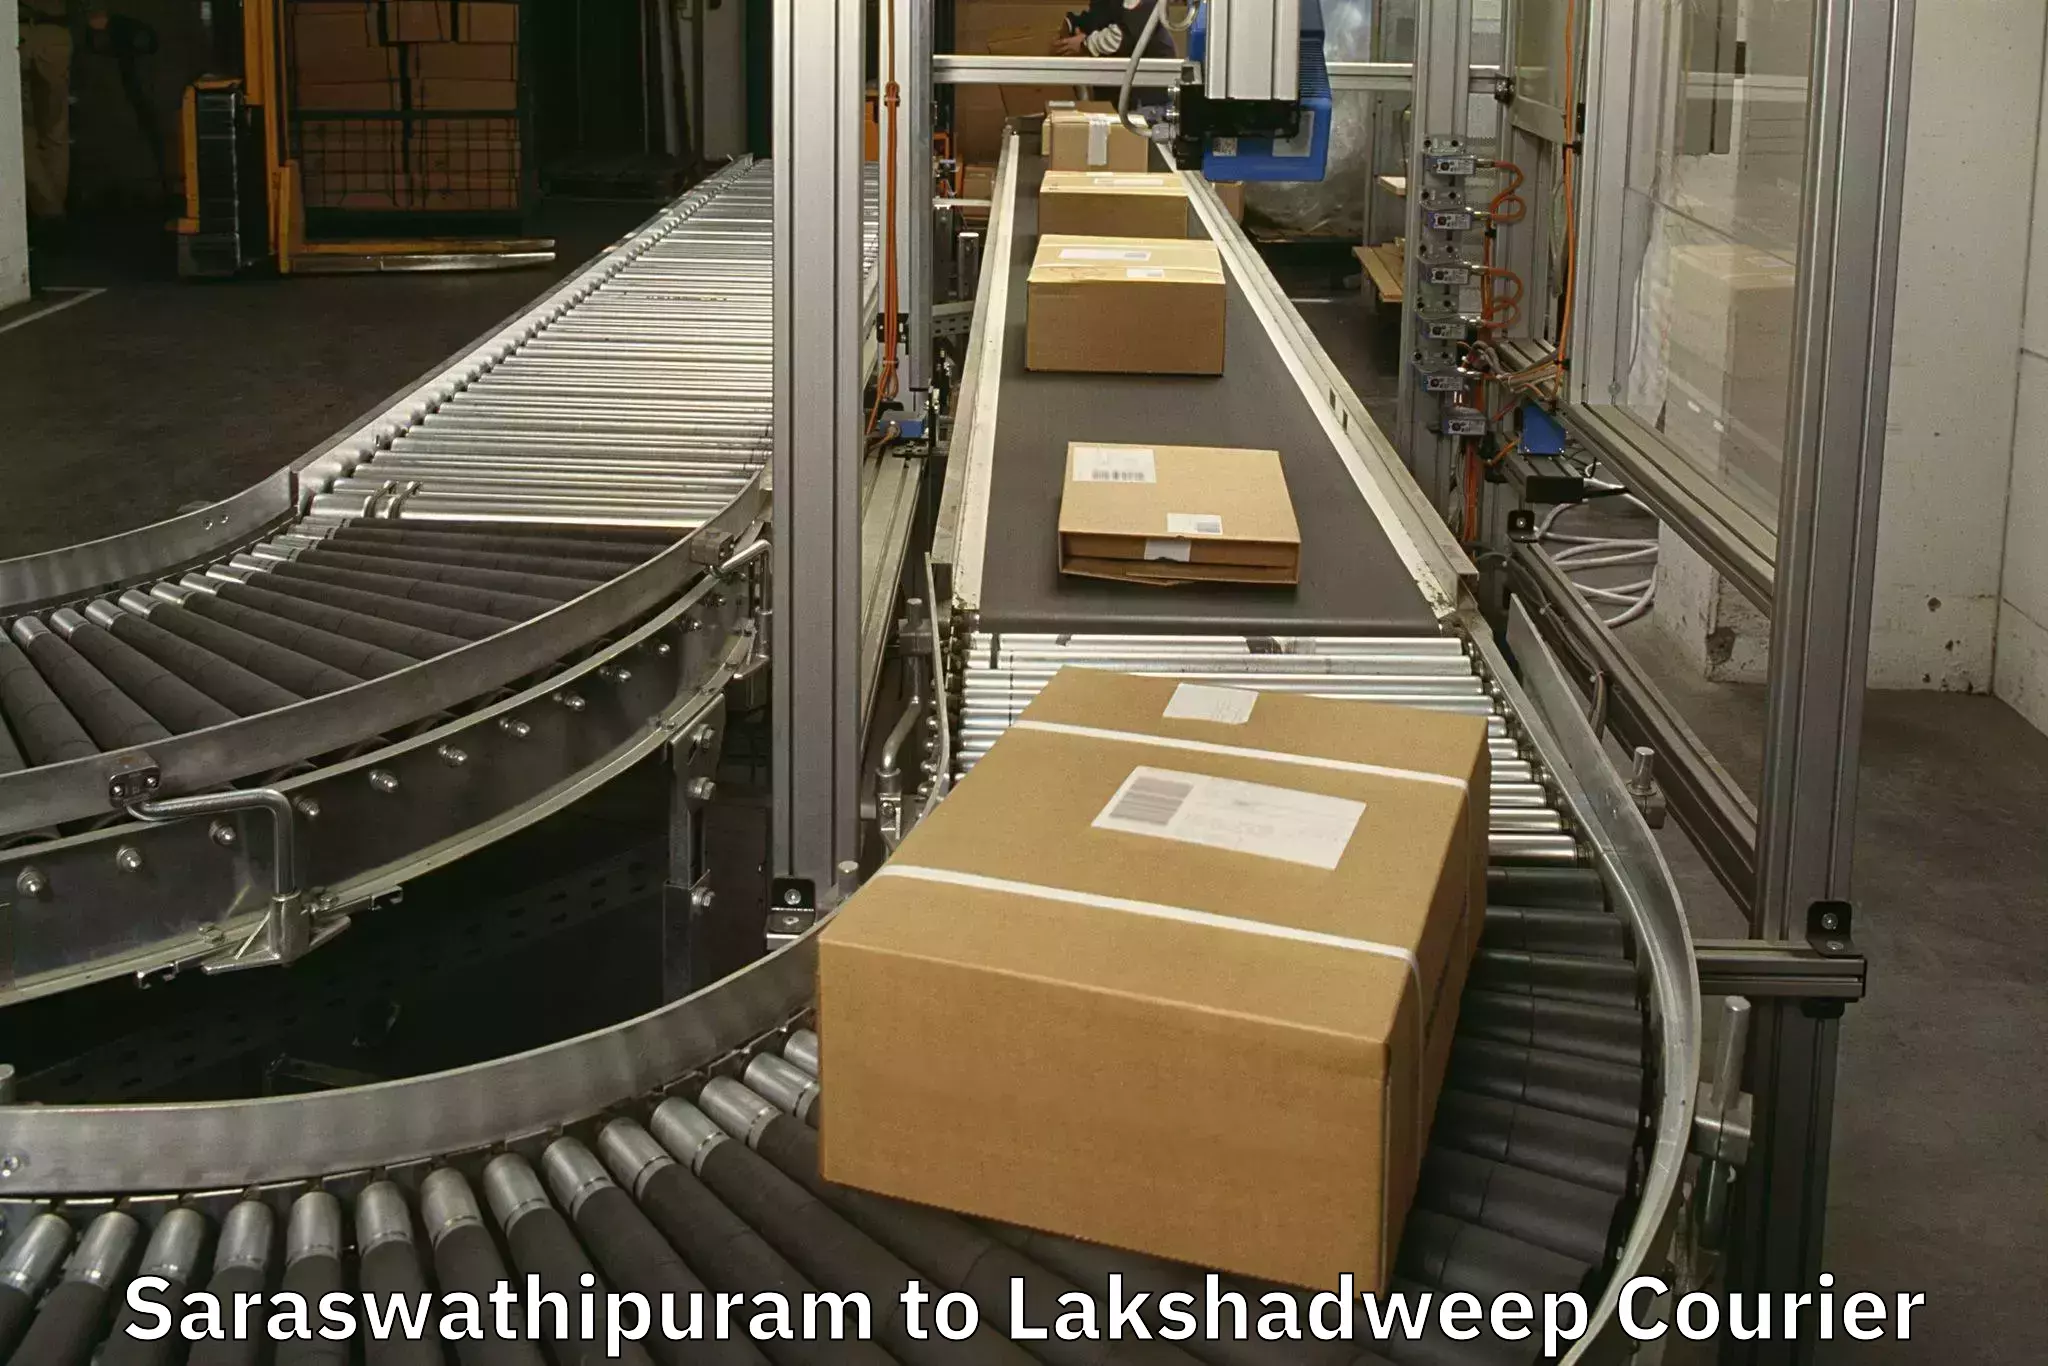 Baggage transport technology Saraswathipuram to Lakshadweep